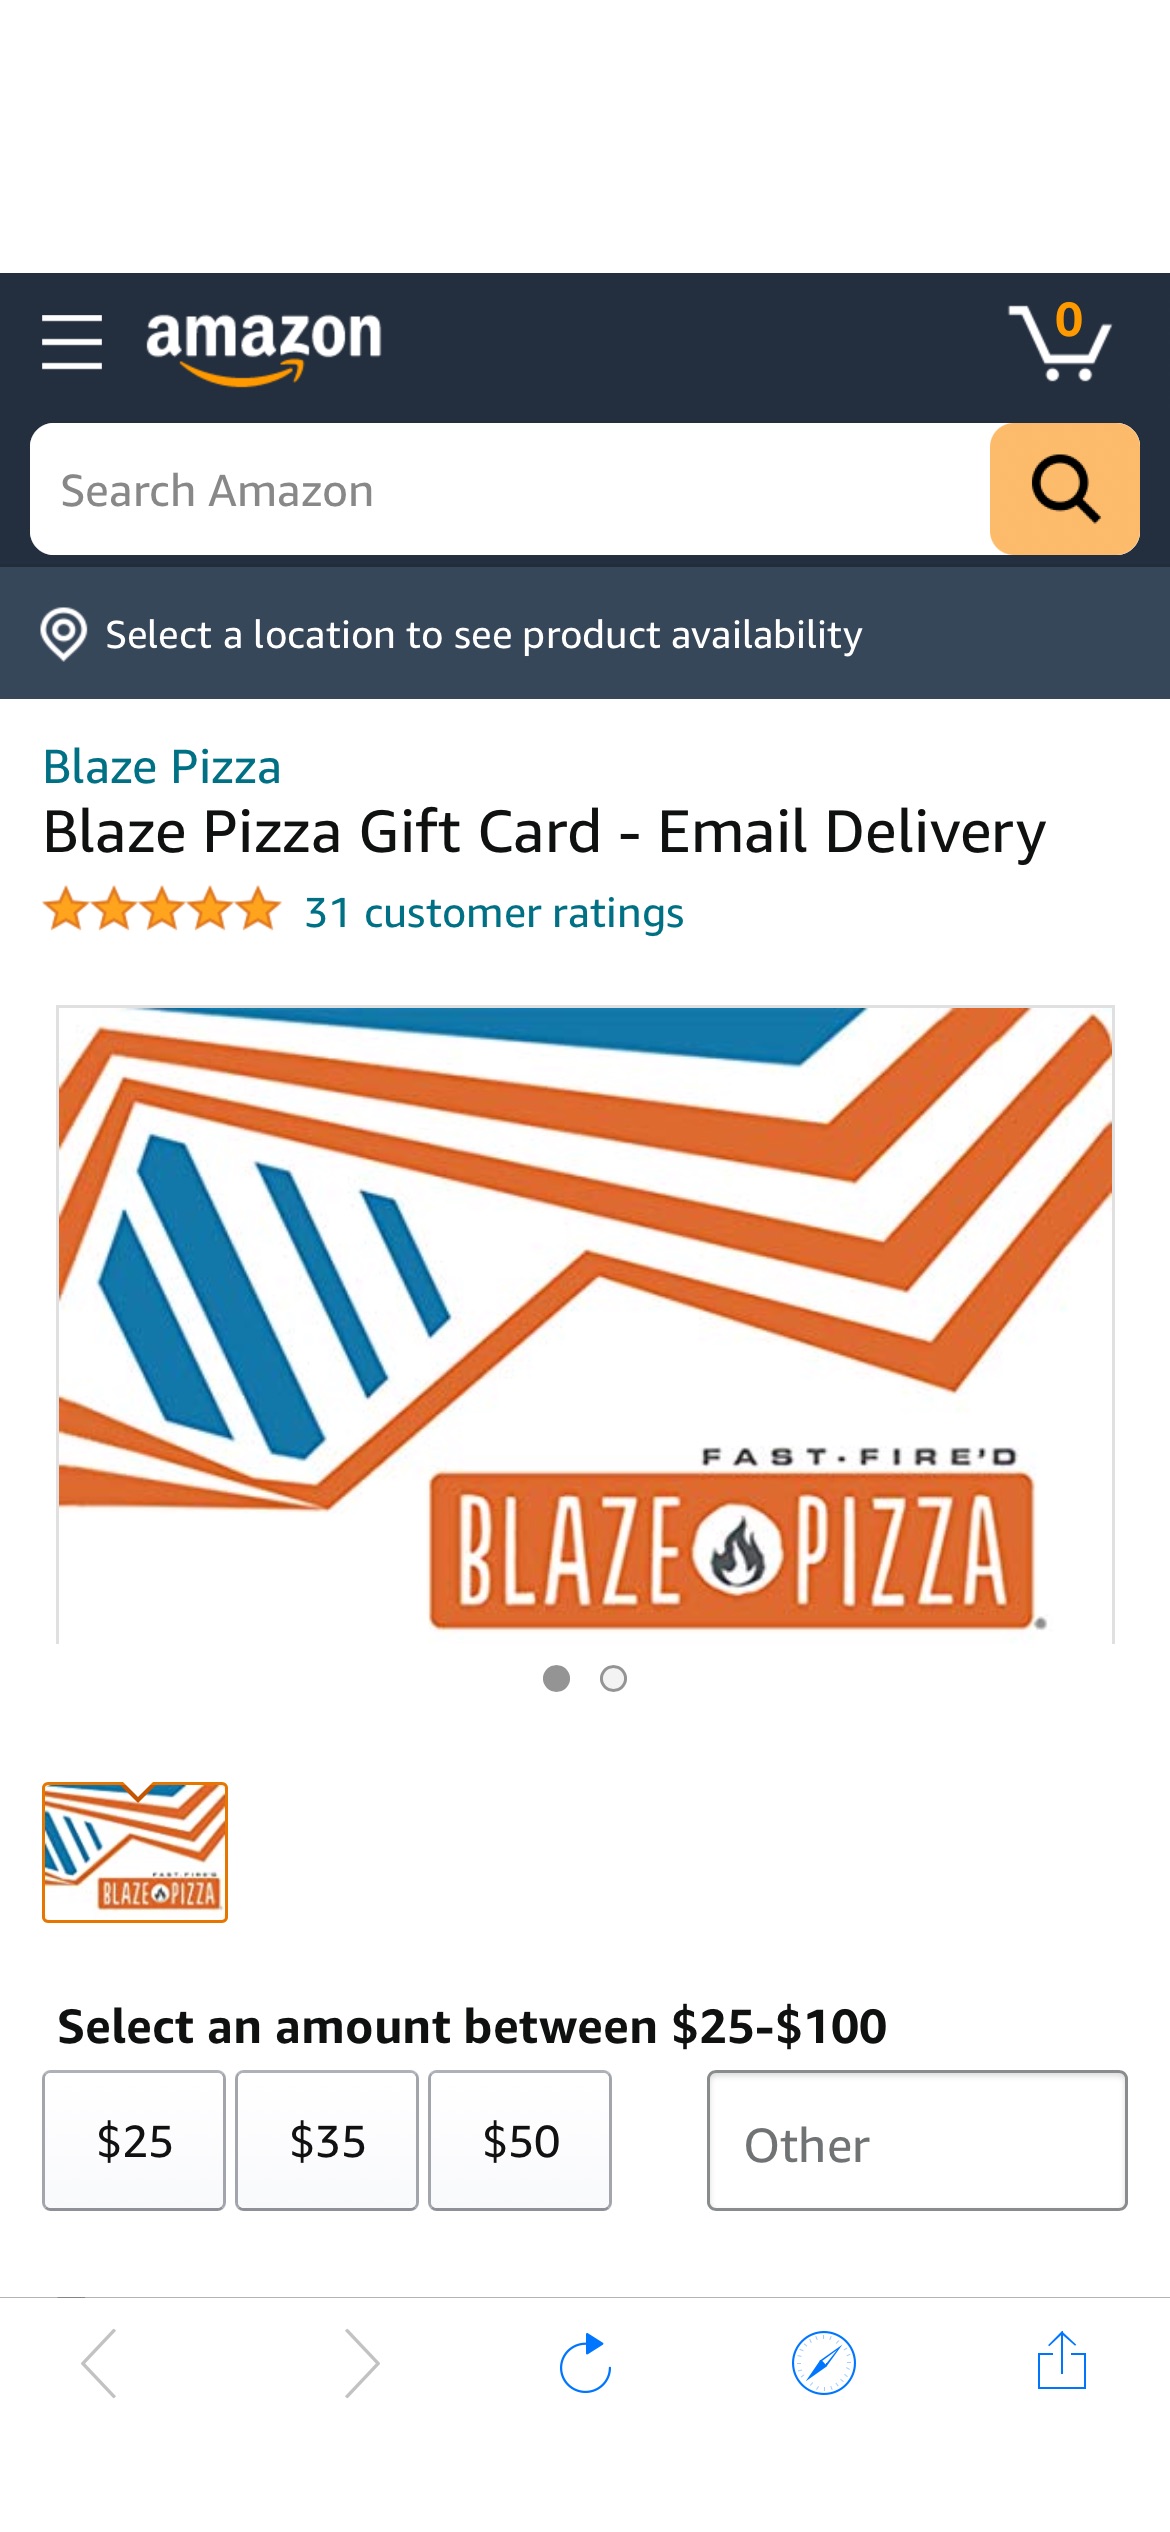 Blaze Pizze礼卡8折